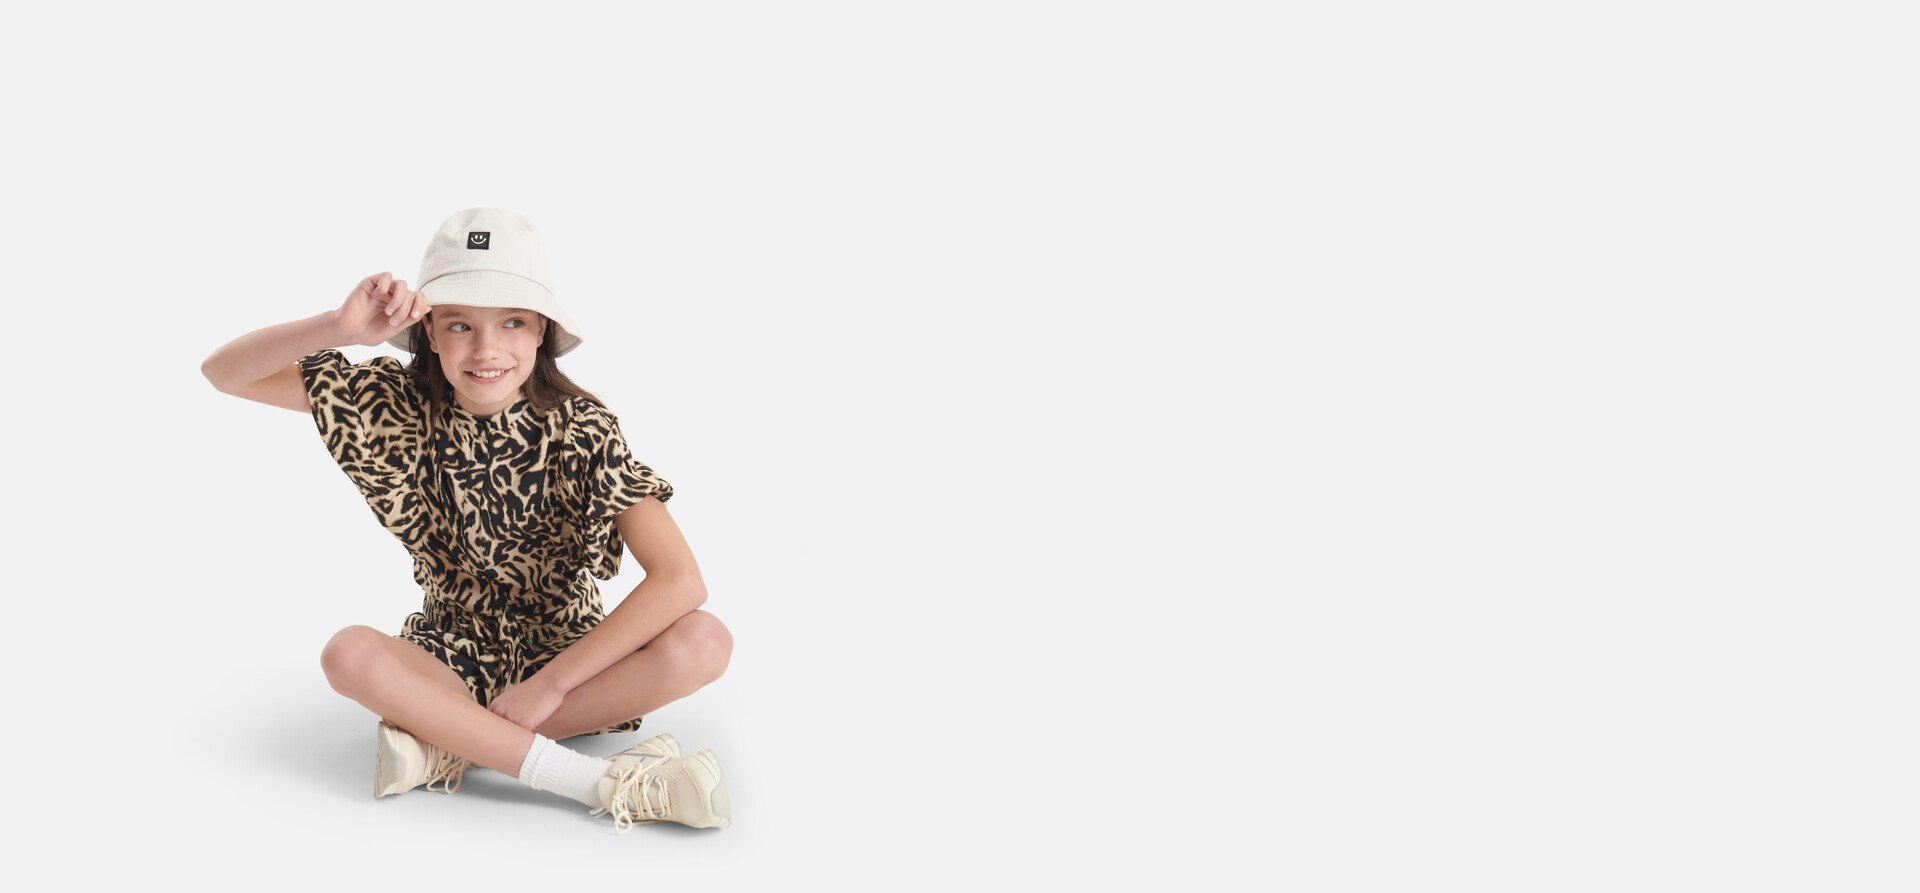 Leoparden-Oberteil Braun SHOEBY GIRLS